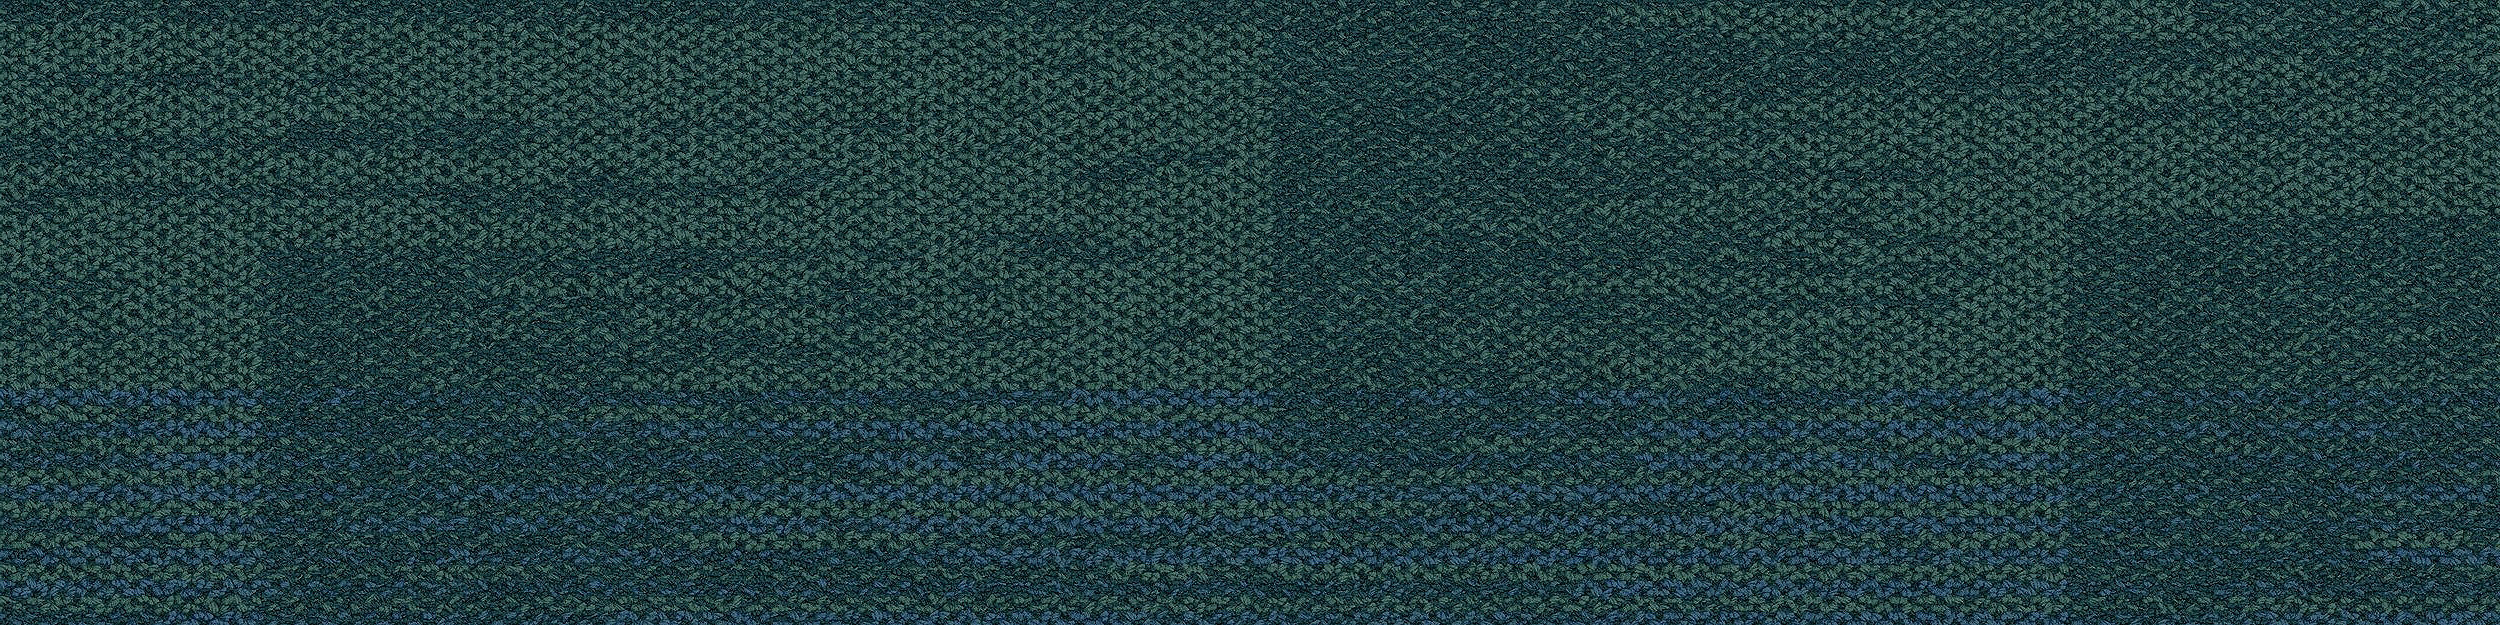 AE317 Carpet Tile In Aquamarine image number 13